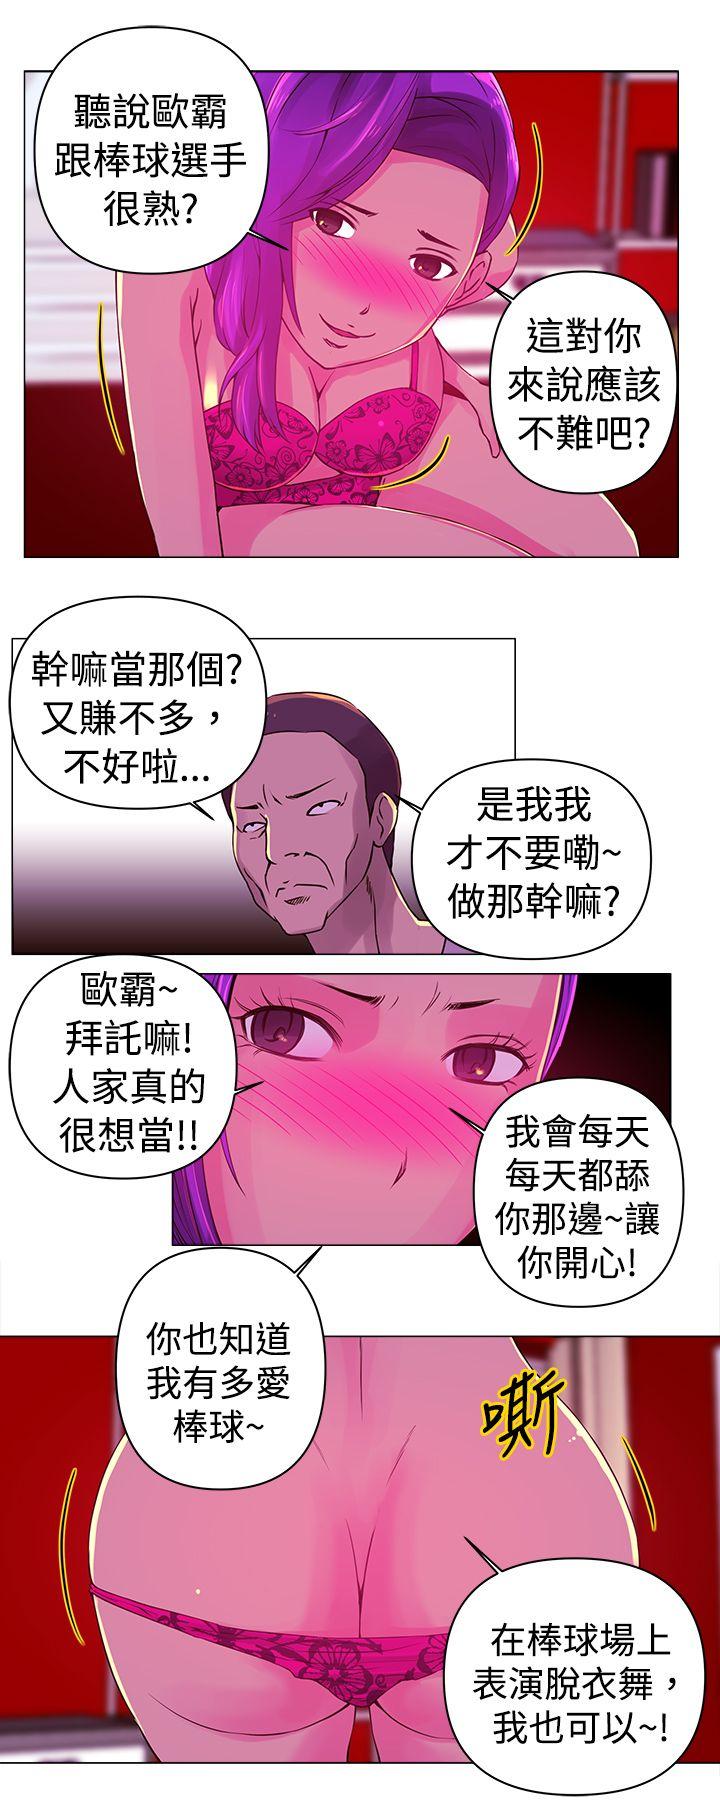 韩国污漫画 Commission 第13话 12